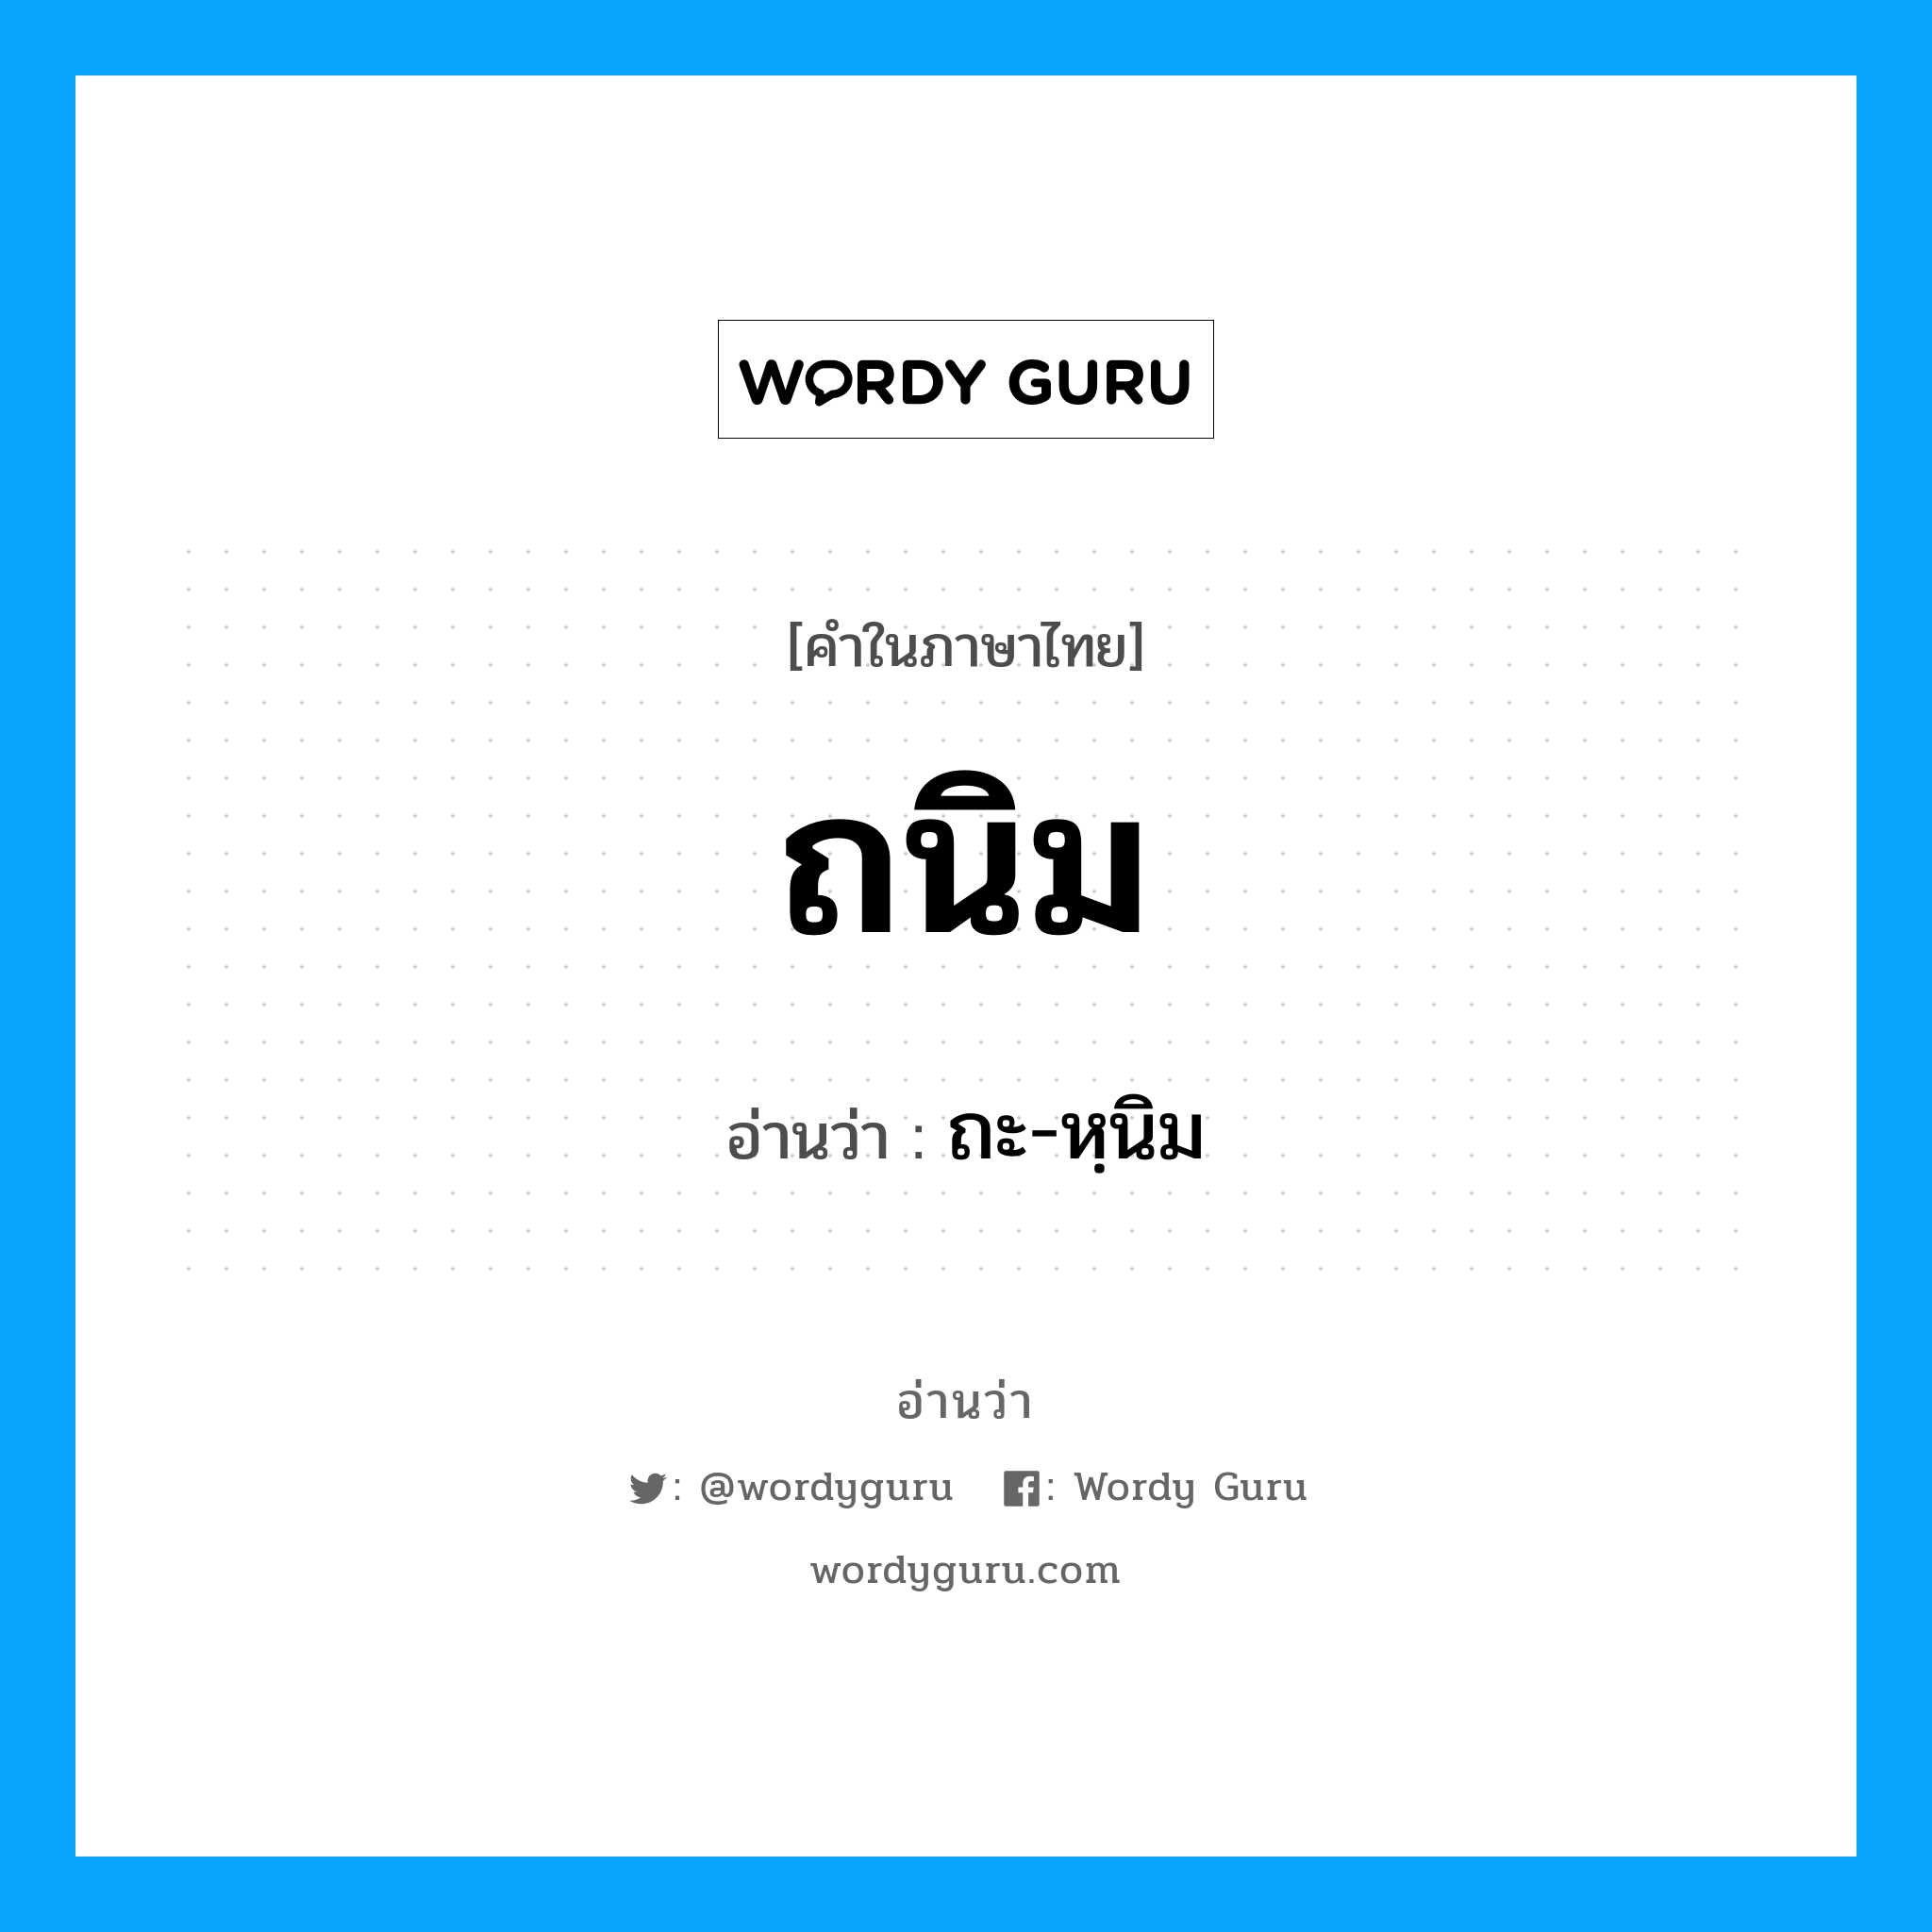 ถะ-หฺนิม เป็นคำอ่านของคำไหน?, คำในภาษาไทย ถะ-หฺนิม อ่านว่า ถนิม